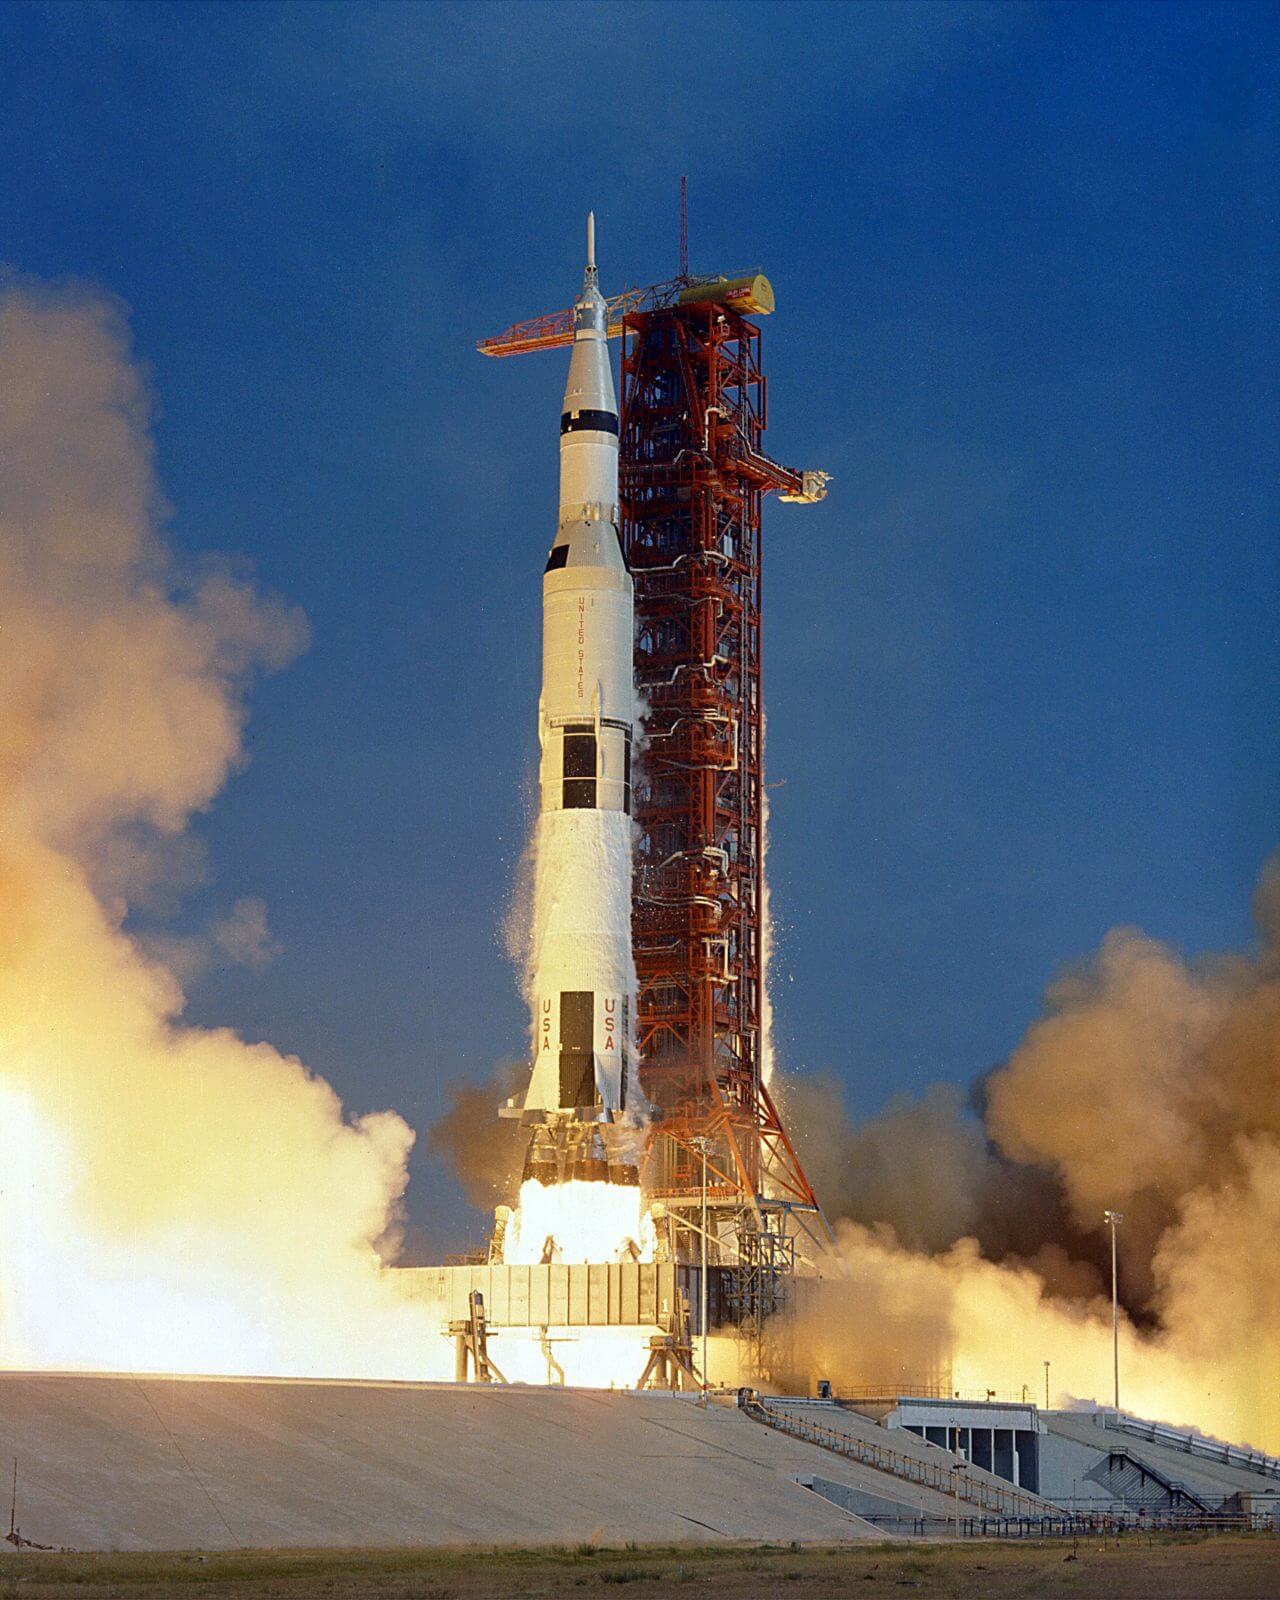 【▲図2: ケネディ宇宙センター39A射点から打ち上げられた「アポロ11号」のサターンVロケット(Image Credit: NASA) 】